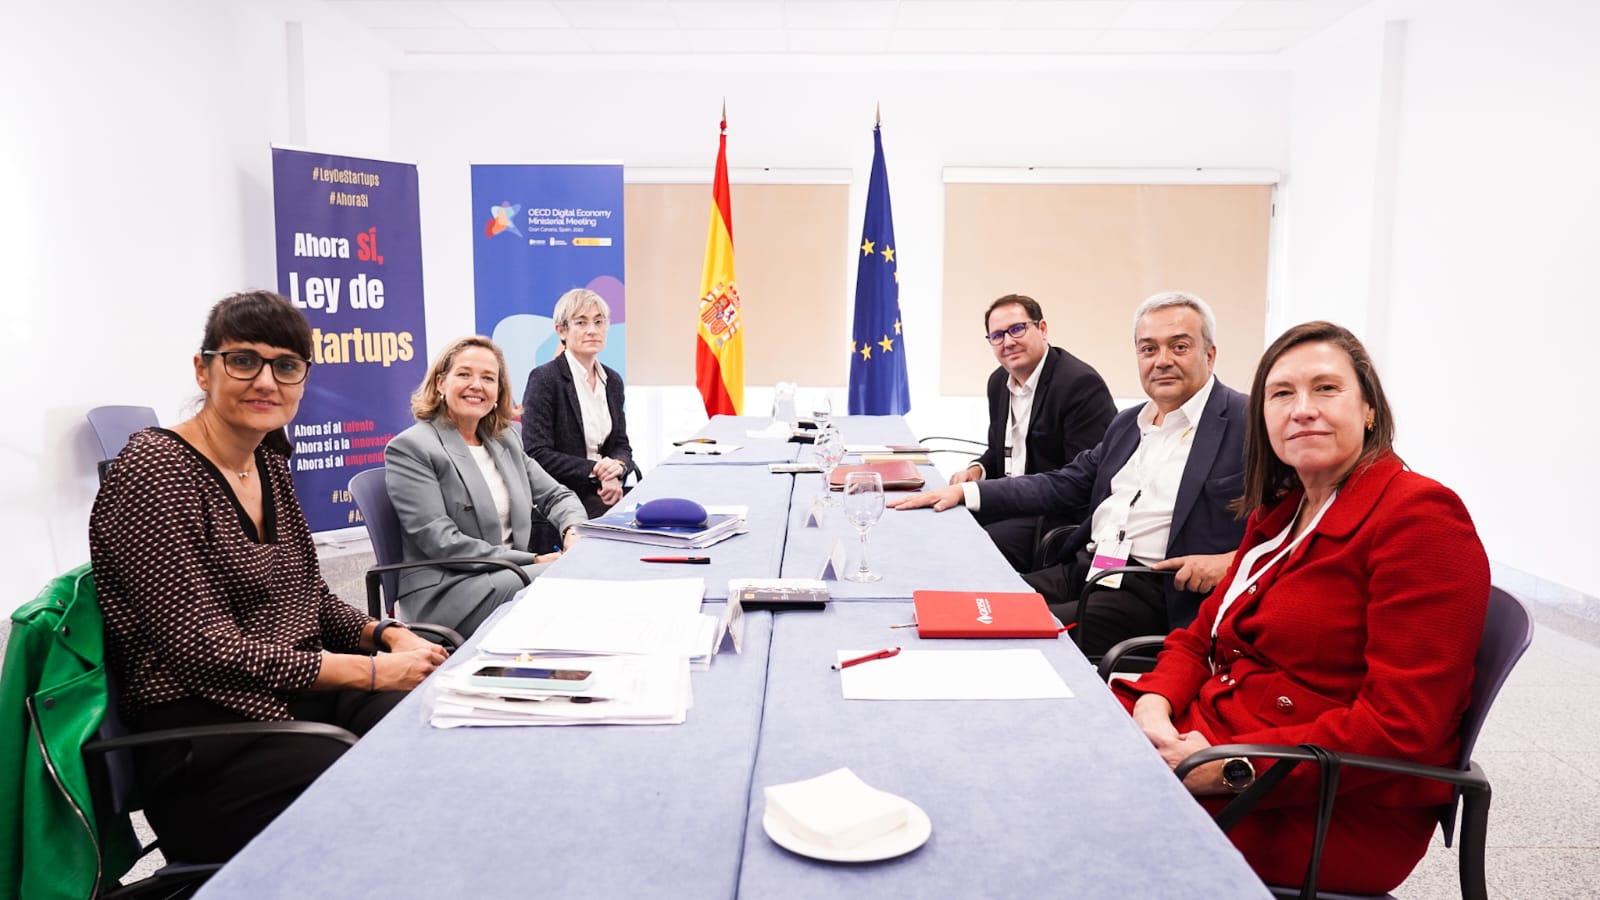 Adigital, AMETIC y DigitalES ofrecen su ayuda al Gobierno para impulsar la transformación digital en España